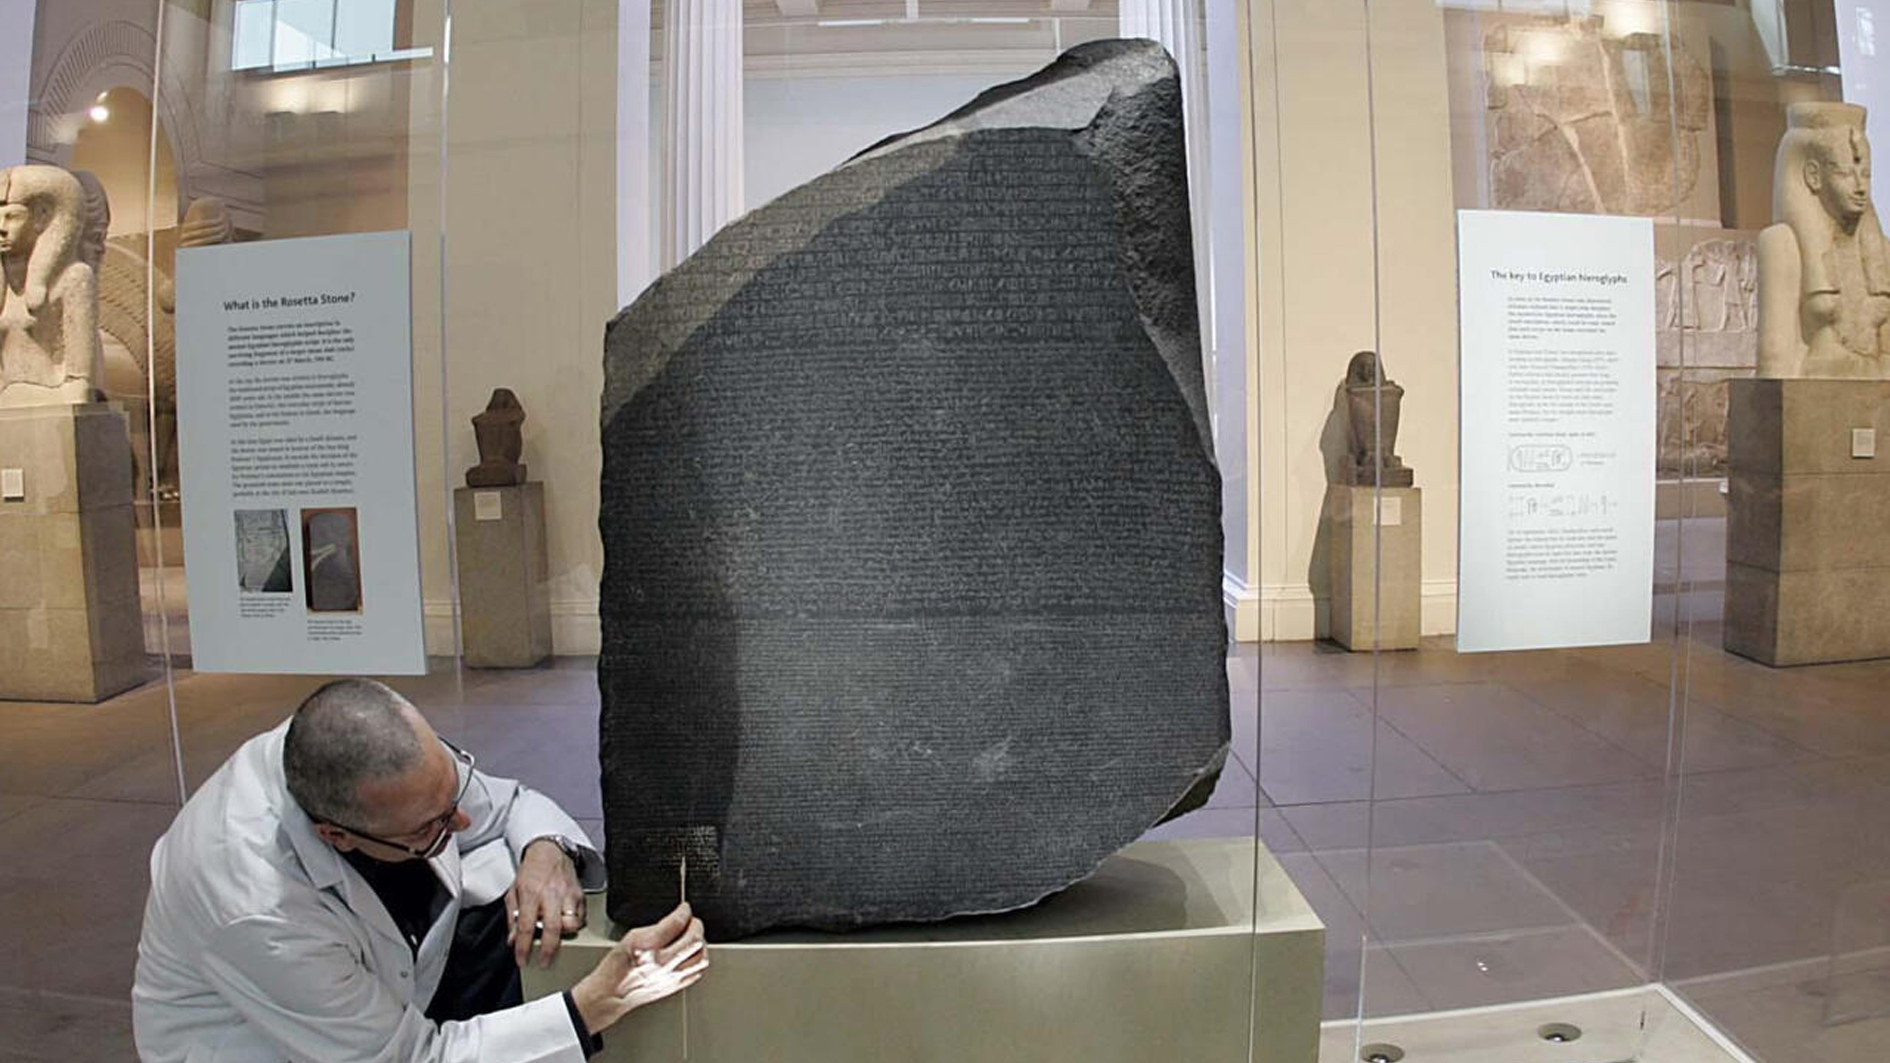 المتحف البريطاني يعرض حجر رشيد لأهميته في فك لغز الهيروغليفية قبل 200 عام